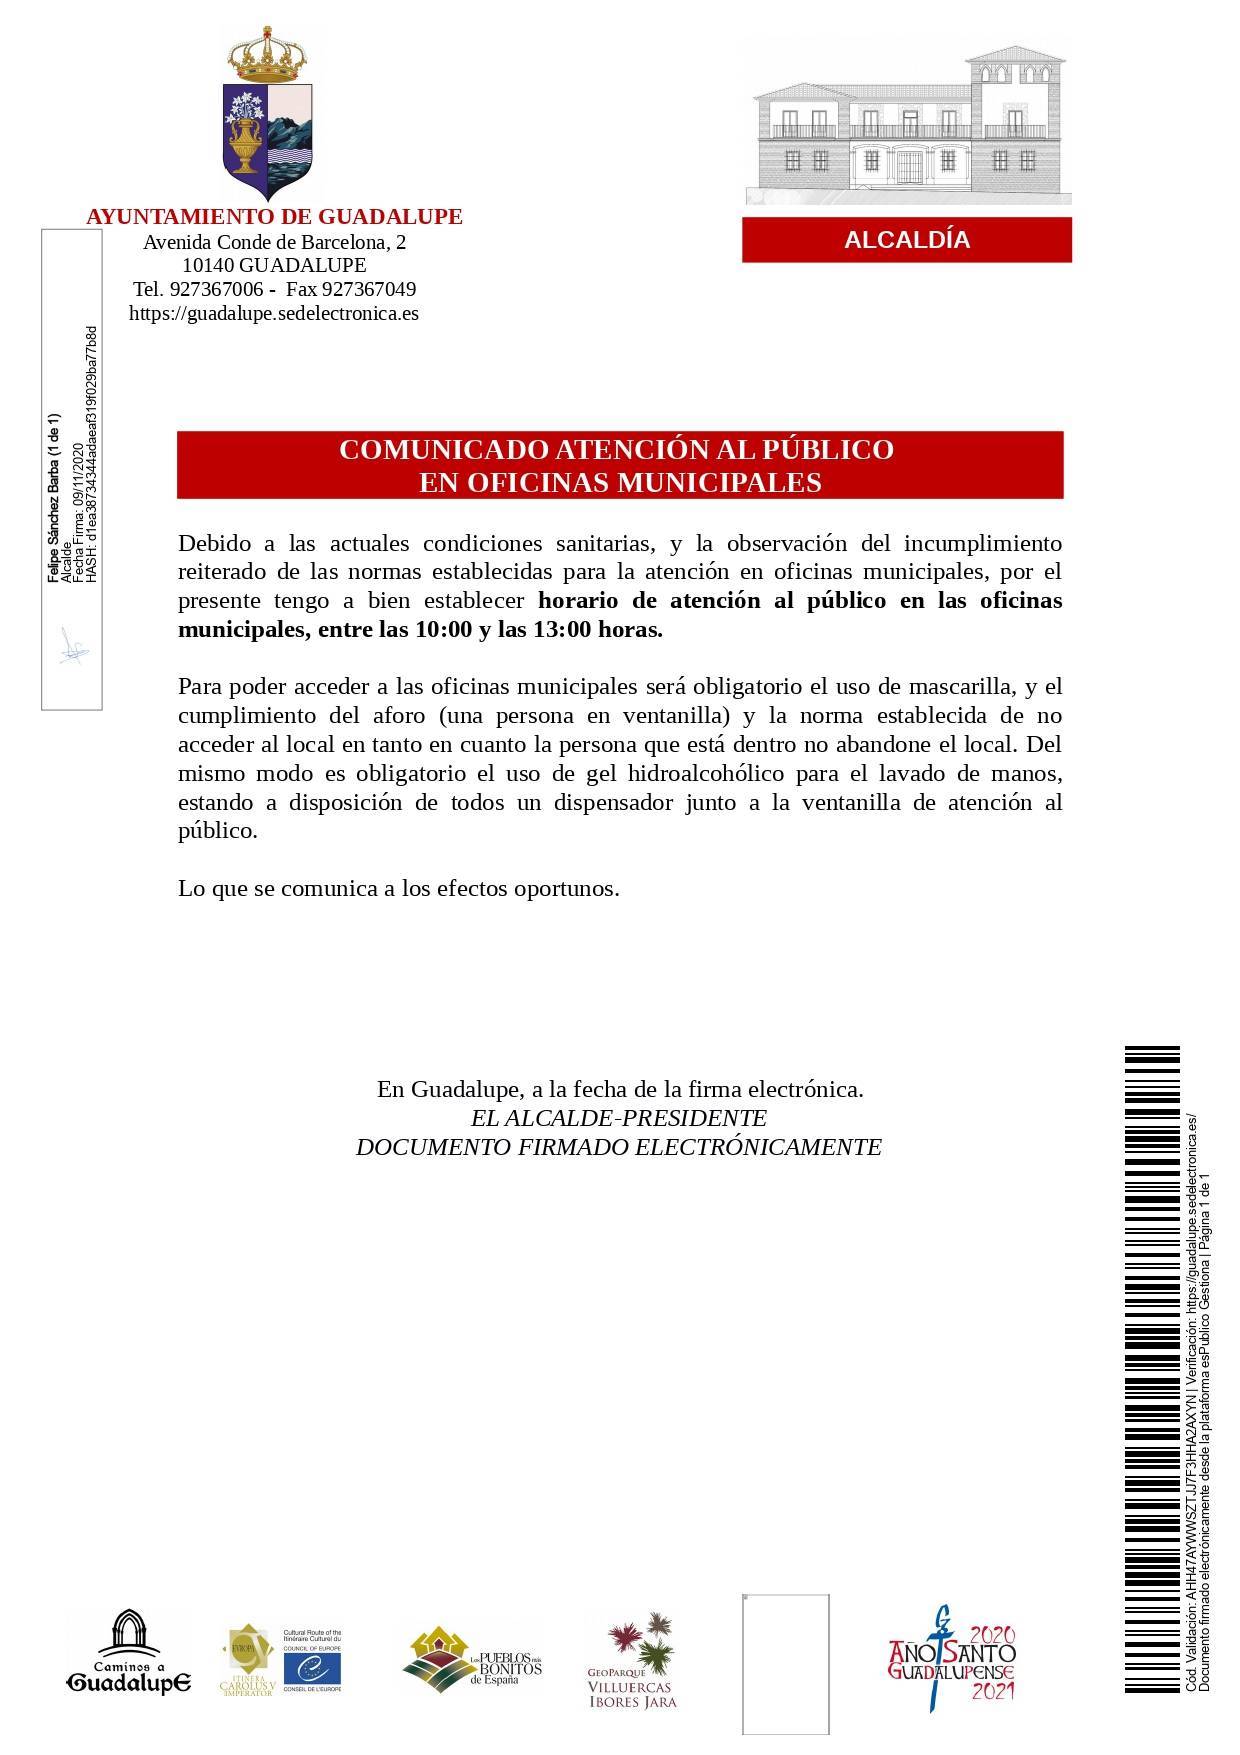 Cambio de horario de atención al público de las oficinas municipales (noviembre 2020) - Guadalupe (Cáceres)